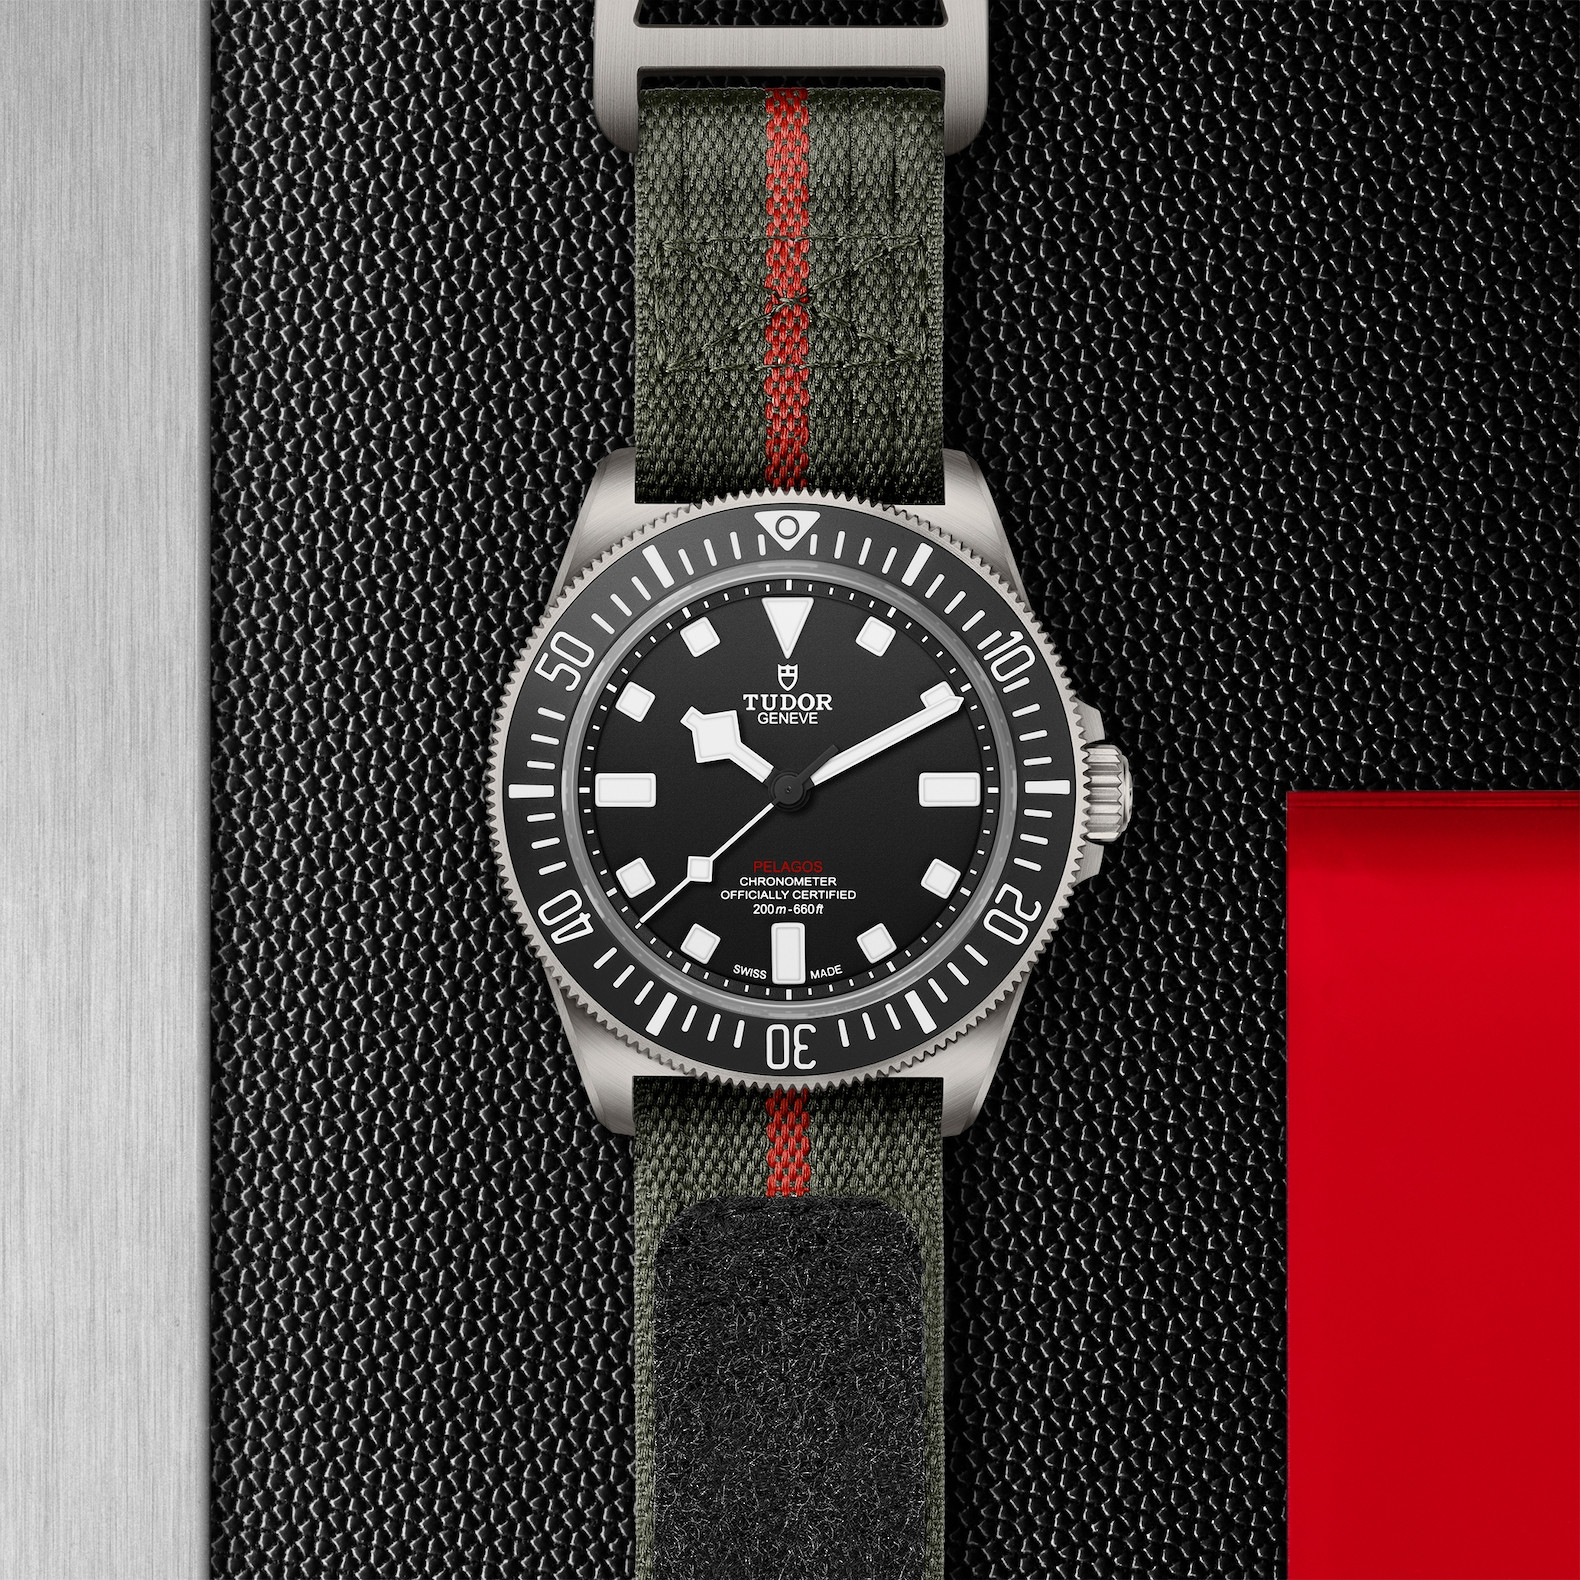 Tudor Pelagos FXD Titanium 42mm watch